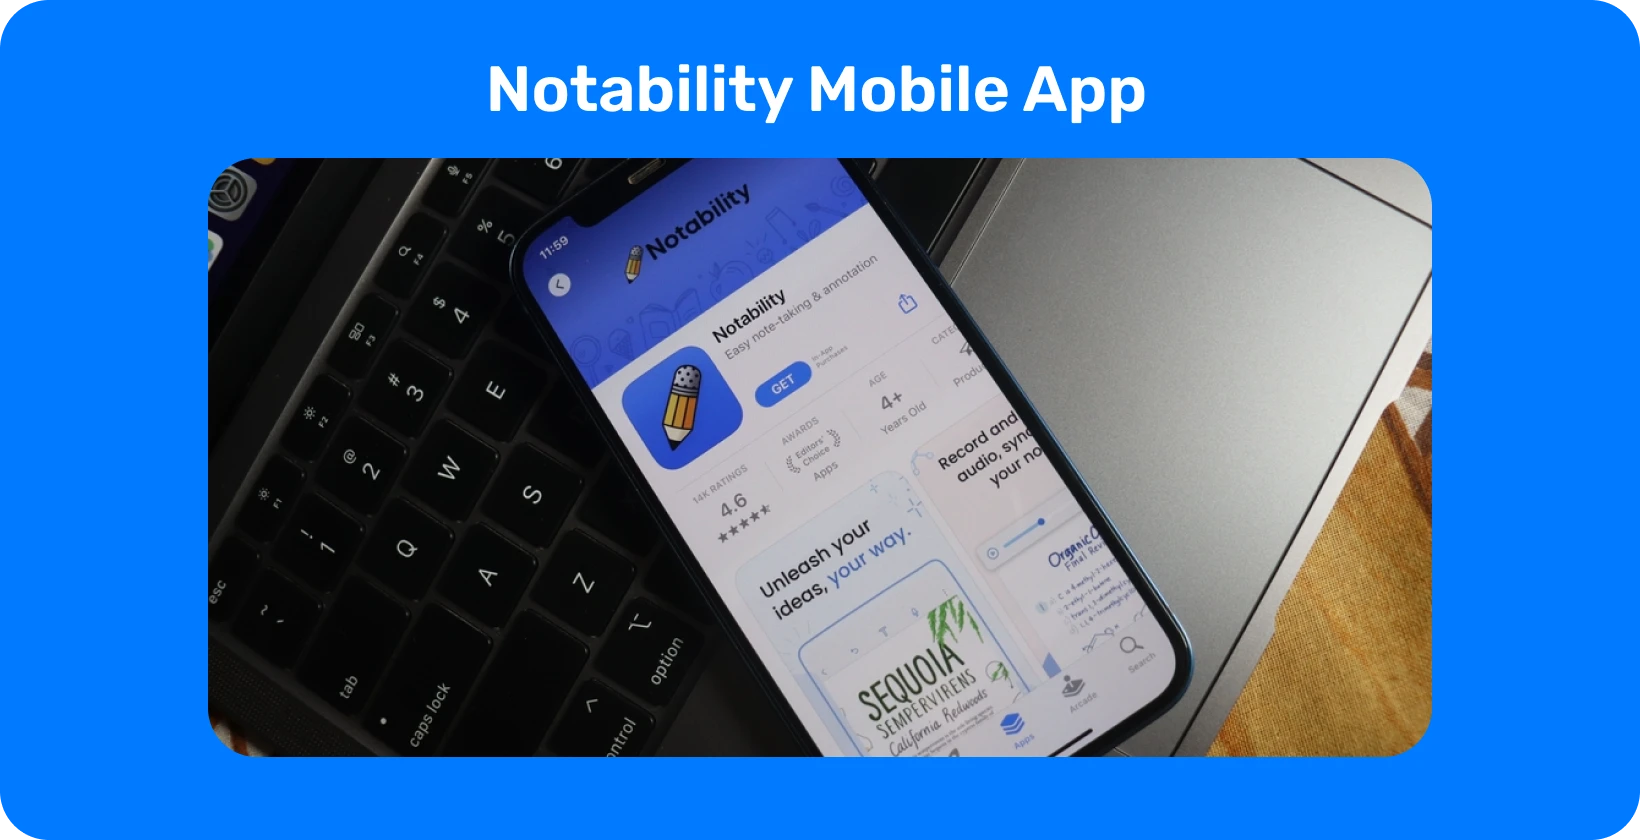 Notability додаток на екрані смартфона з функцією транскрипції, що демонструє можливості перетворення аудіо в текст.